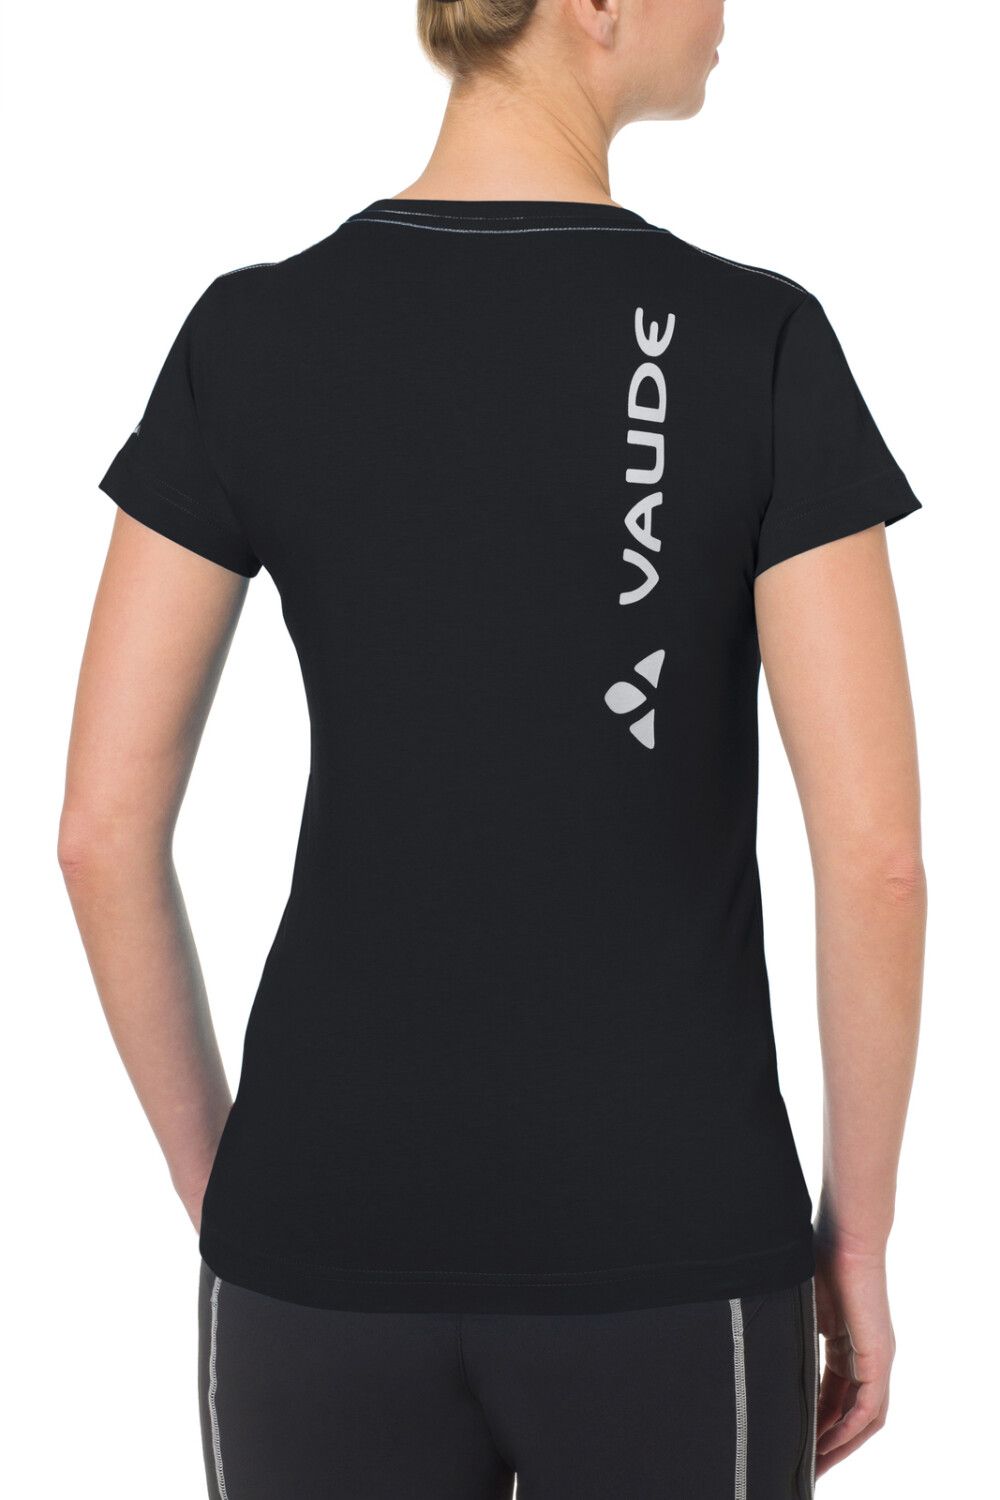 VAUDE Women's Brand Shirt (Bild 13)